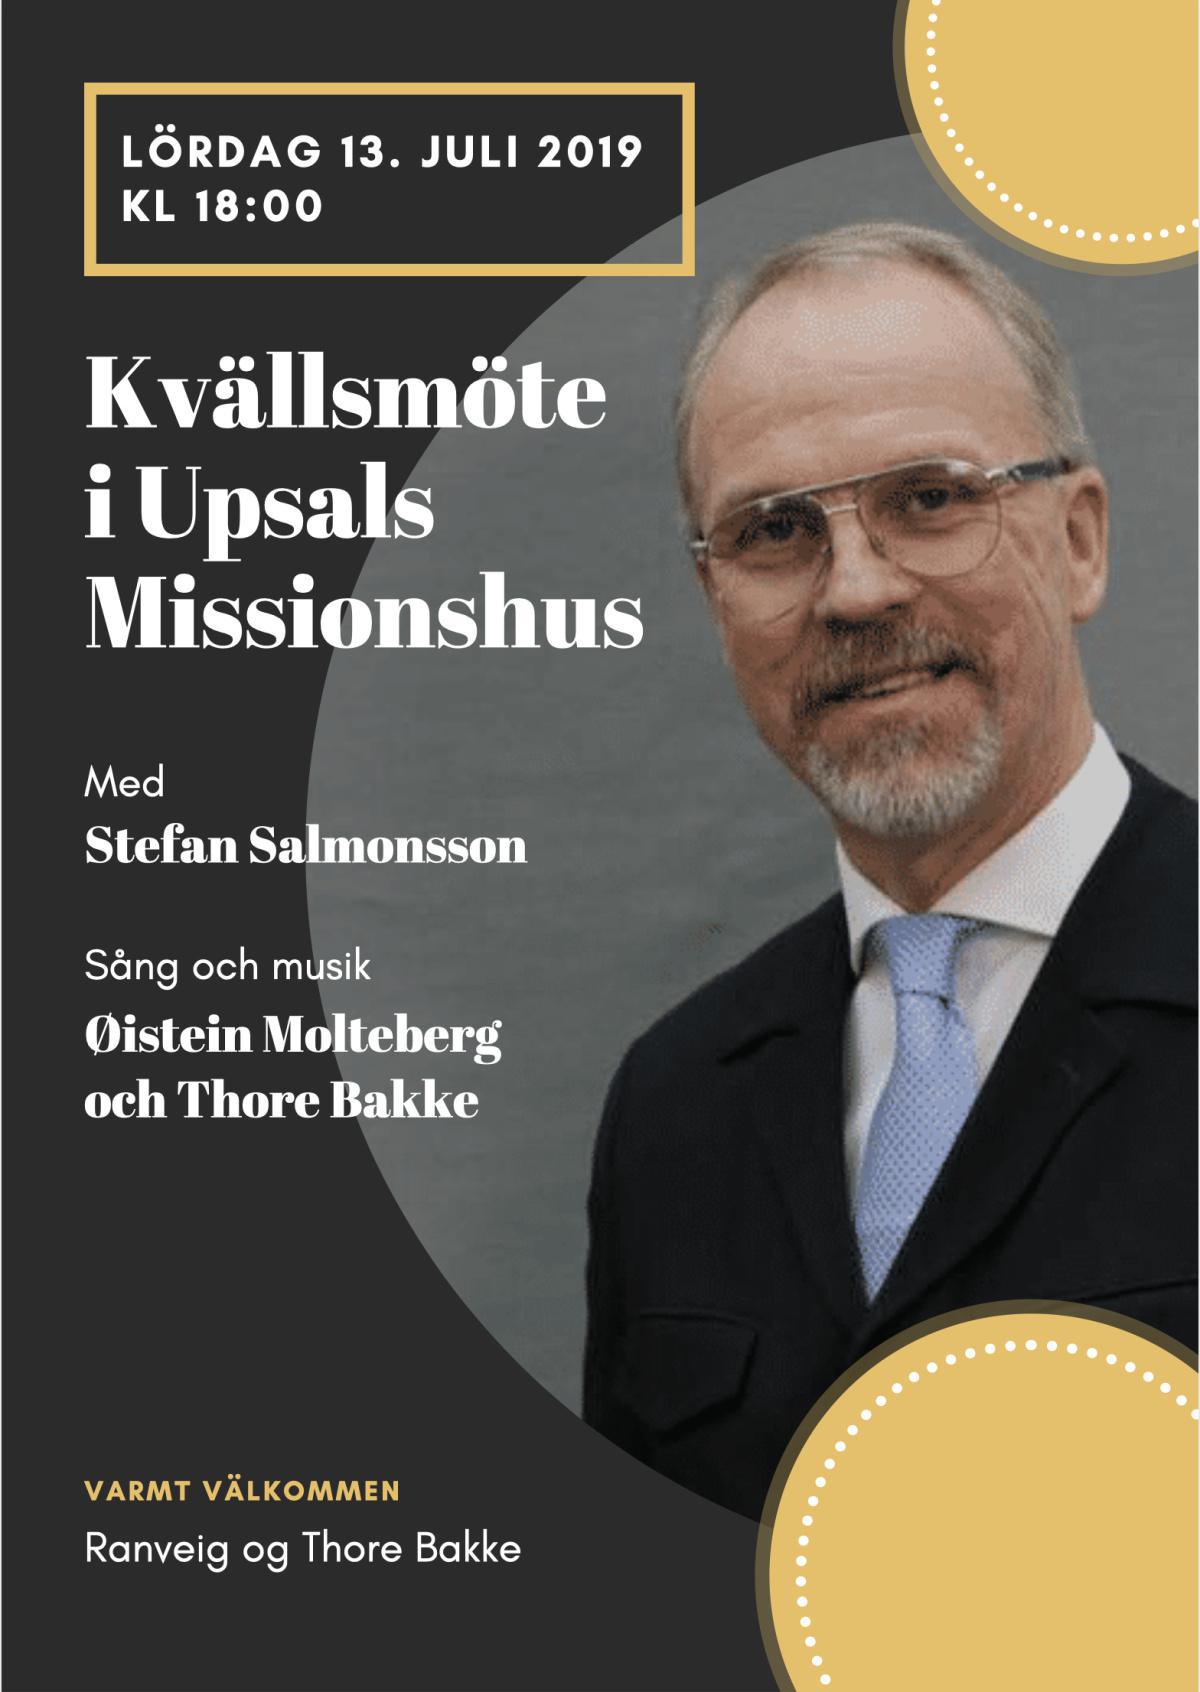 Stefan Salmonsson på Upsals Missionshus